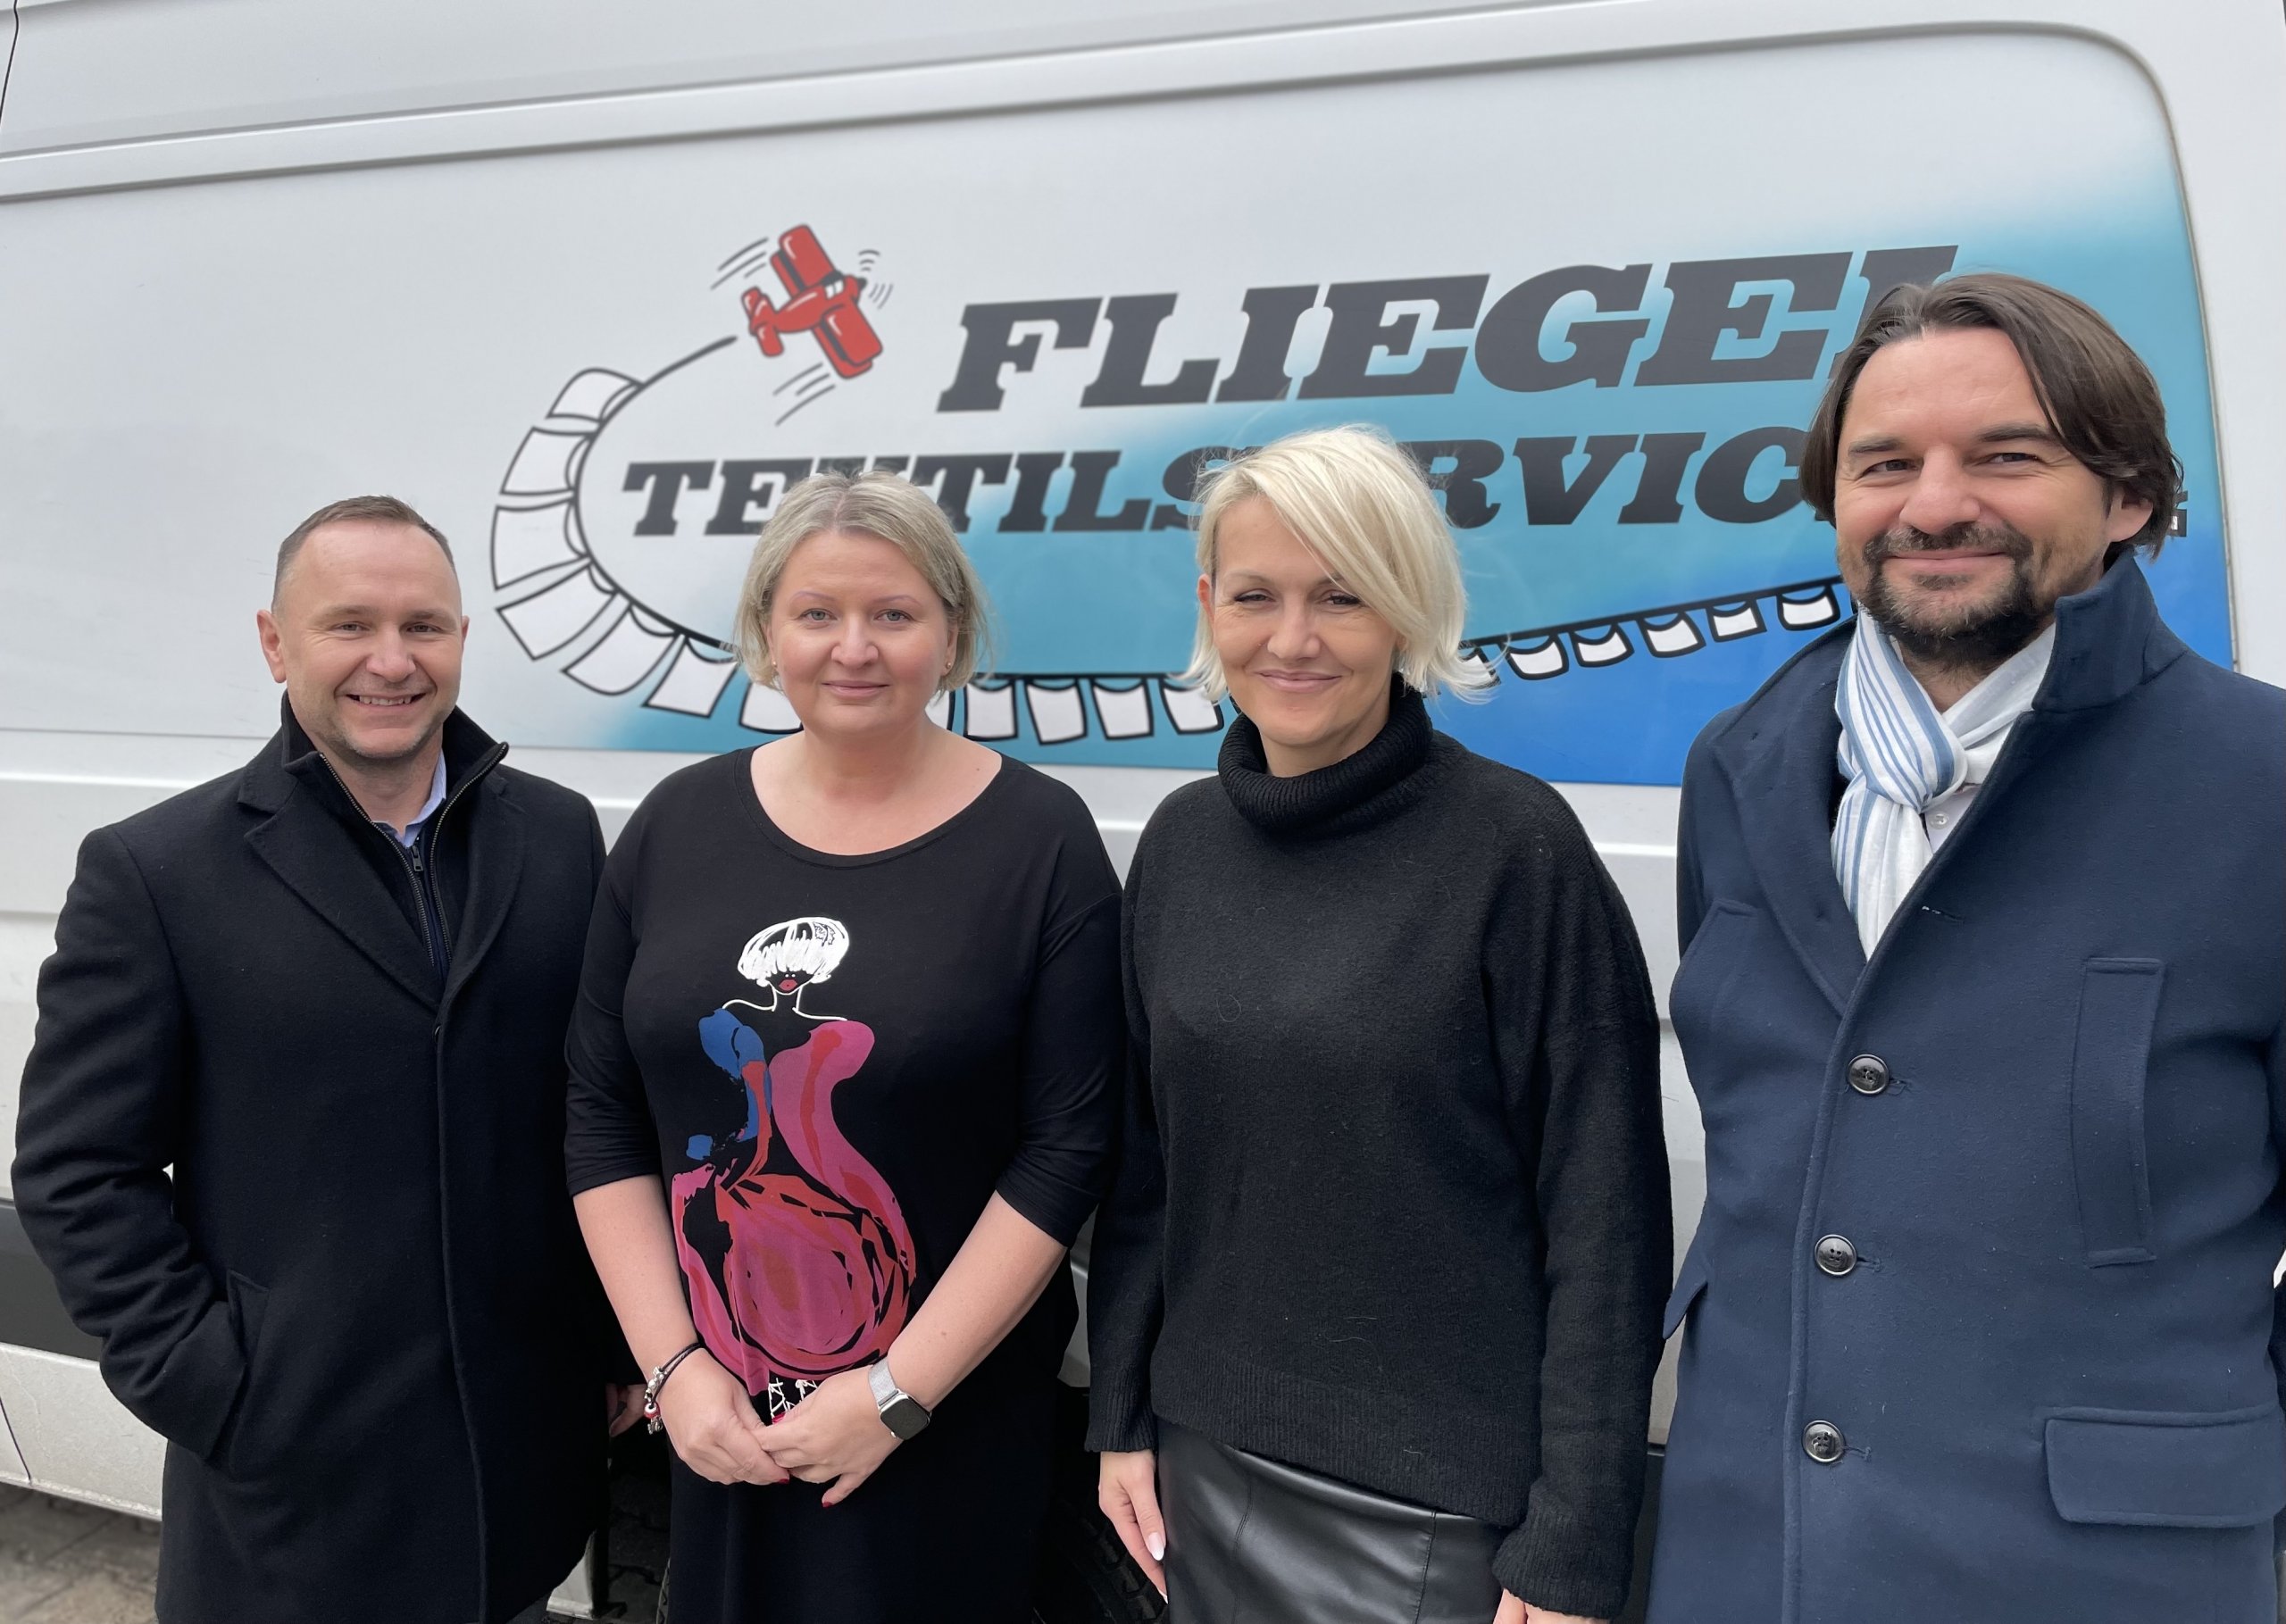 Vorbildlicher Arbeitgeber: Servitex-Mitglied Fliegel Textilservice als Arbeitgeber des Jahres ausgezeichnet